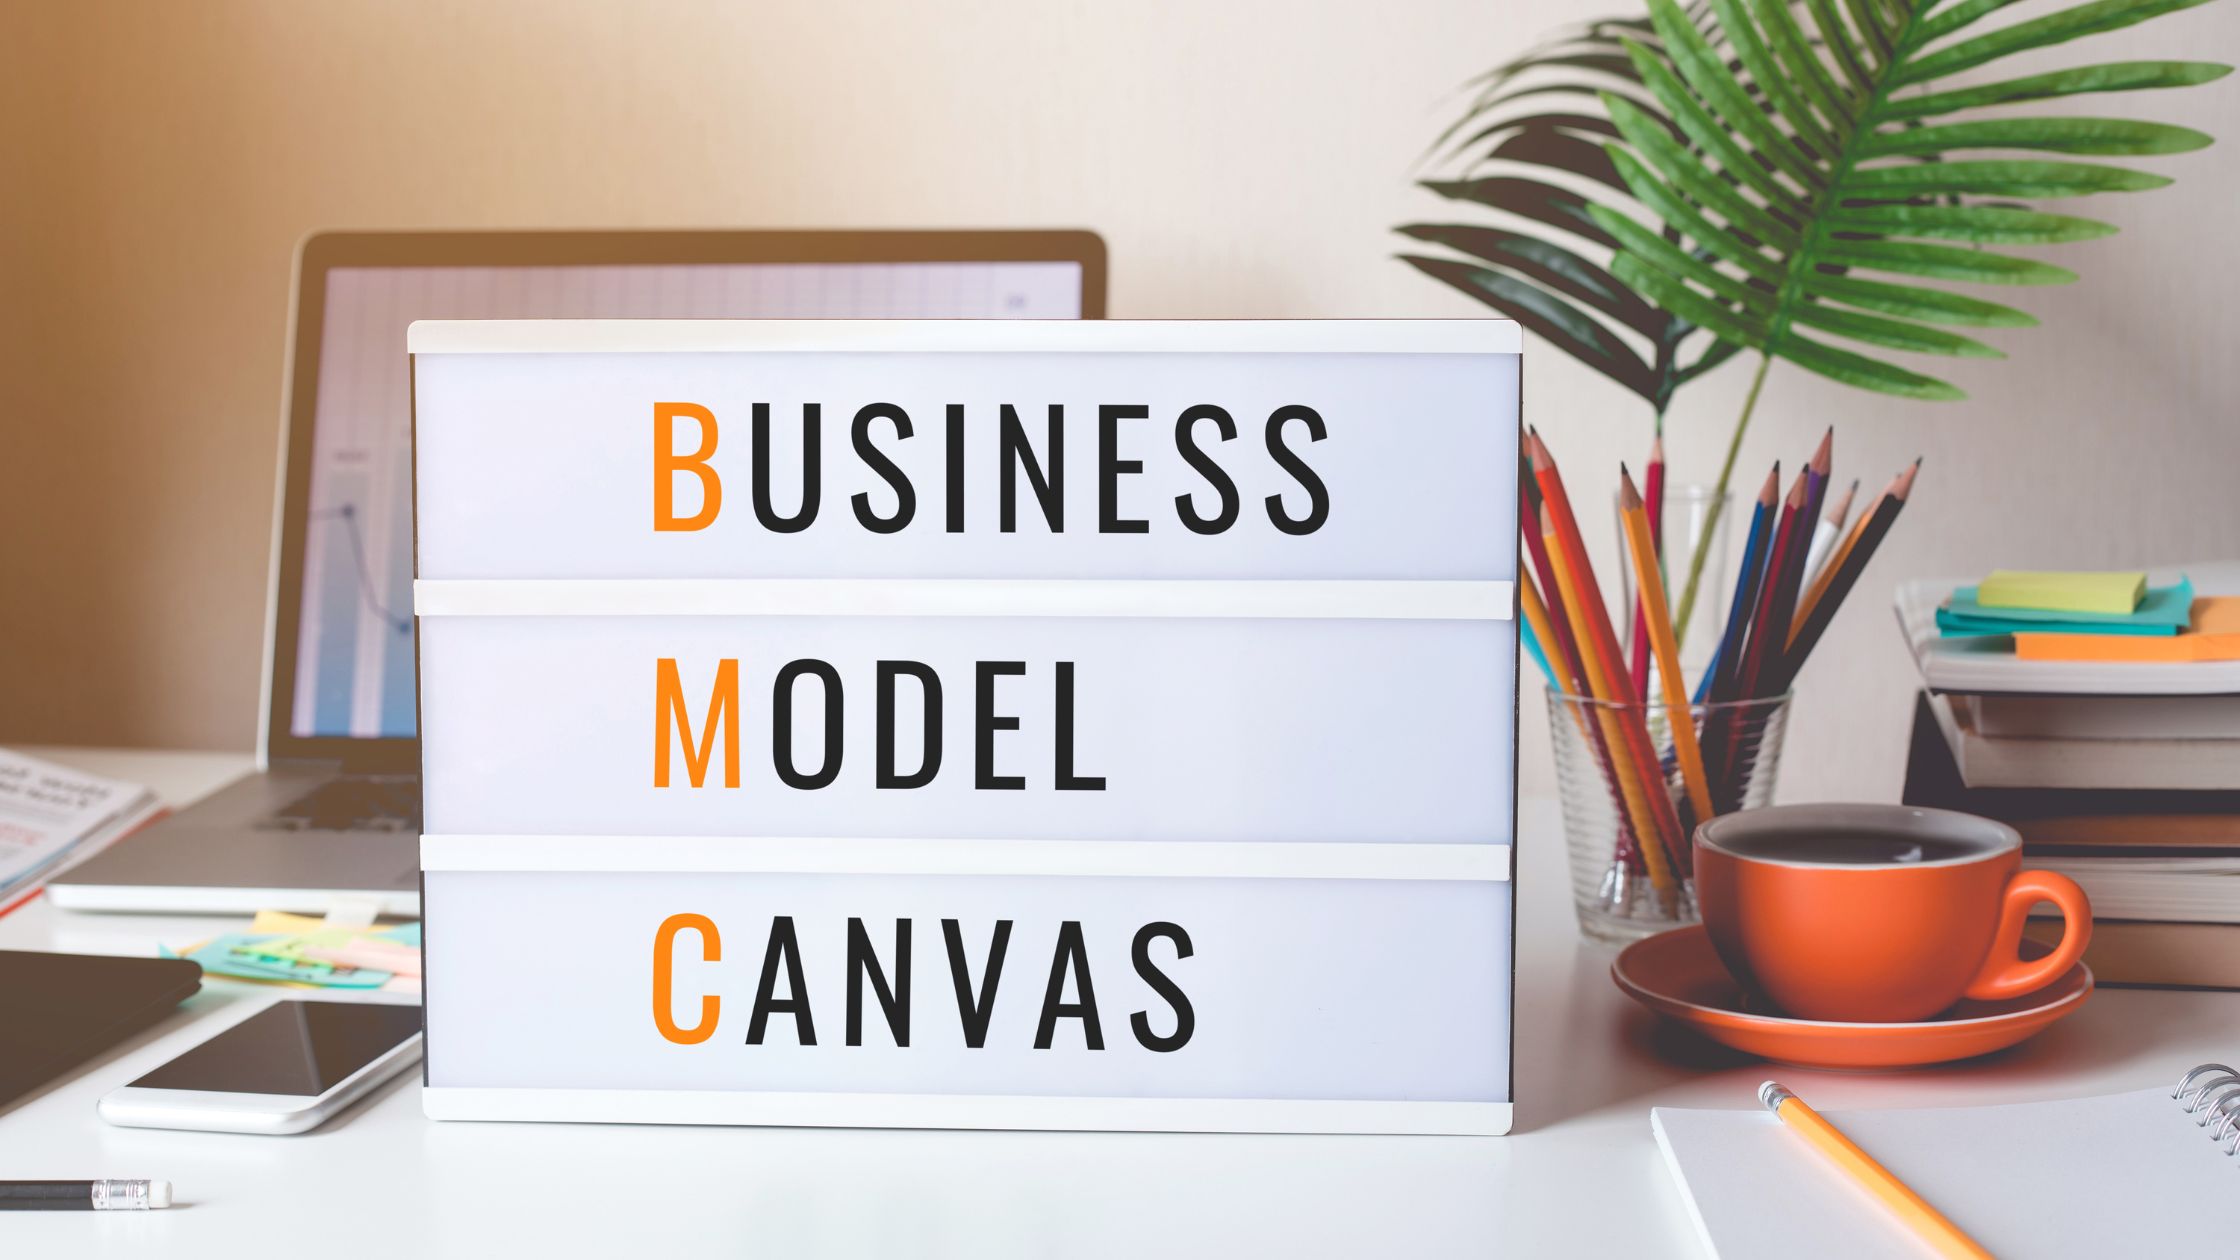 Apa Itu Business Model Canvas Definisi Dan Penjelasannya Asaljeplak My Id